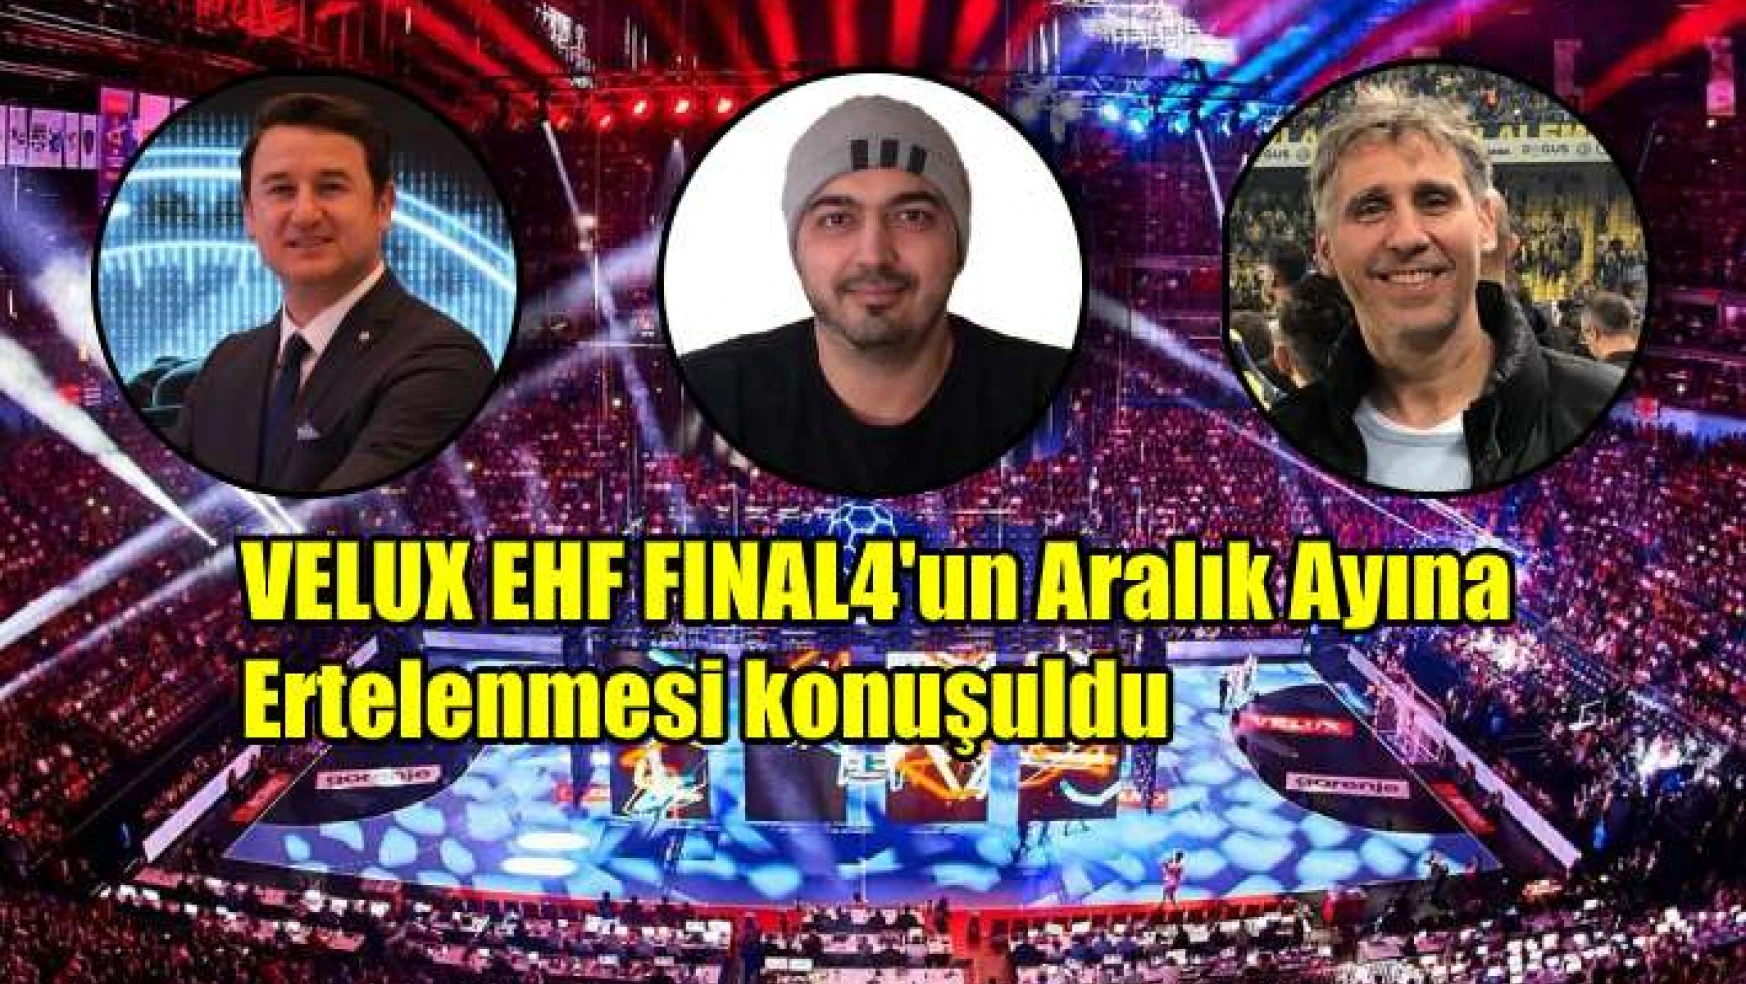 EHF Final4 Aralık ayına ertelenmesi tartışıldı